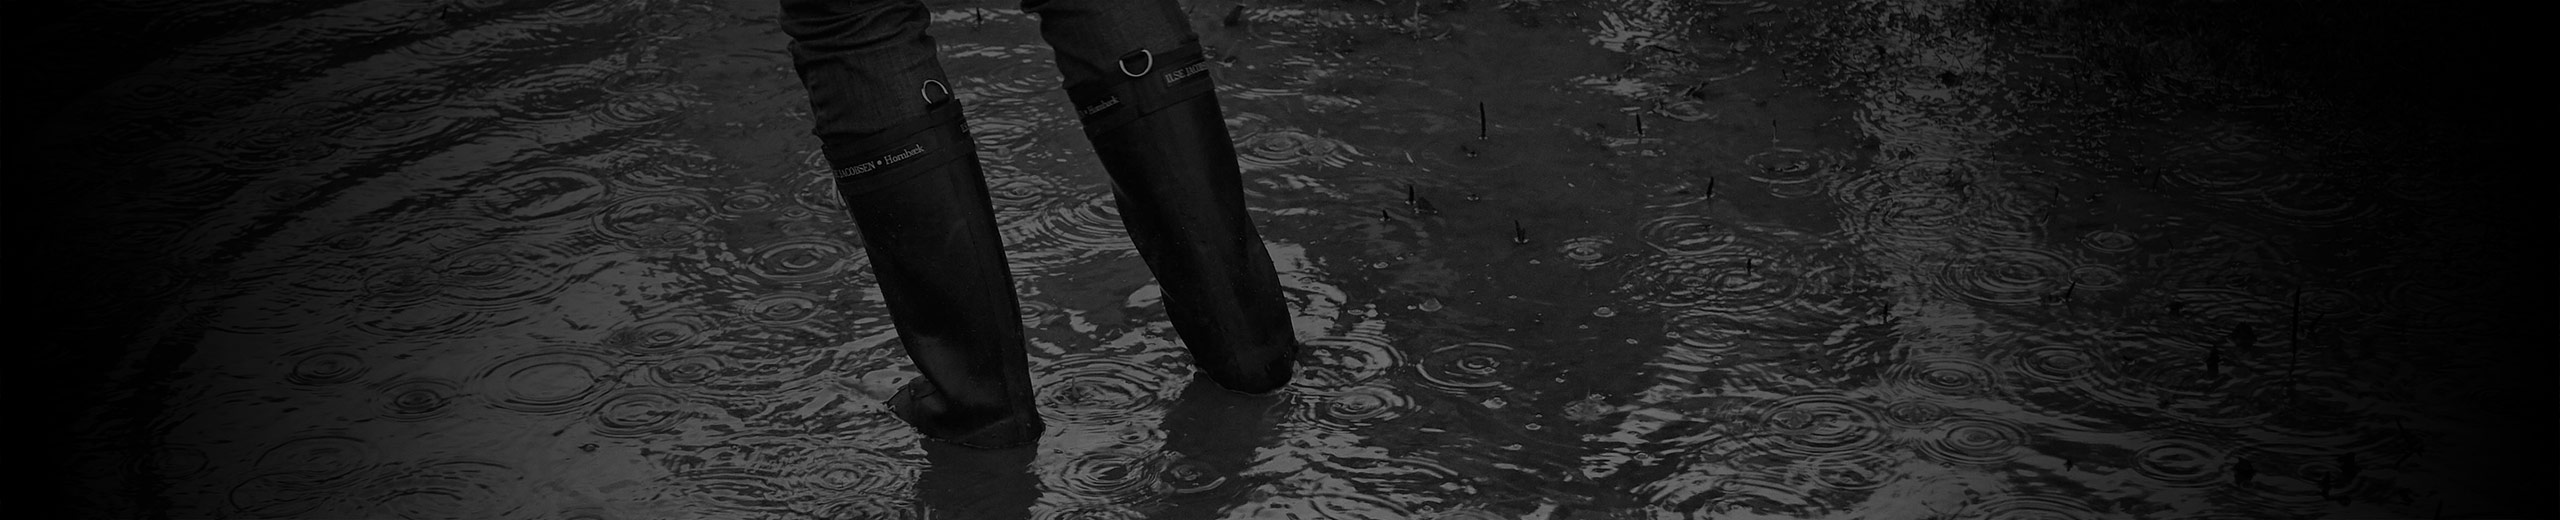 To ben i vand til højt op på gummistøvlerne